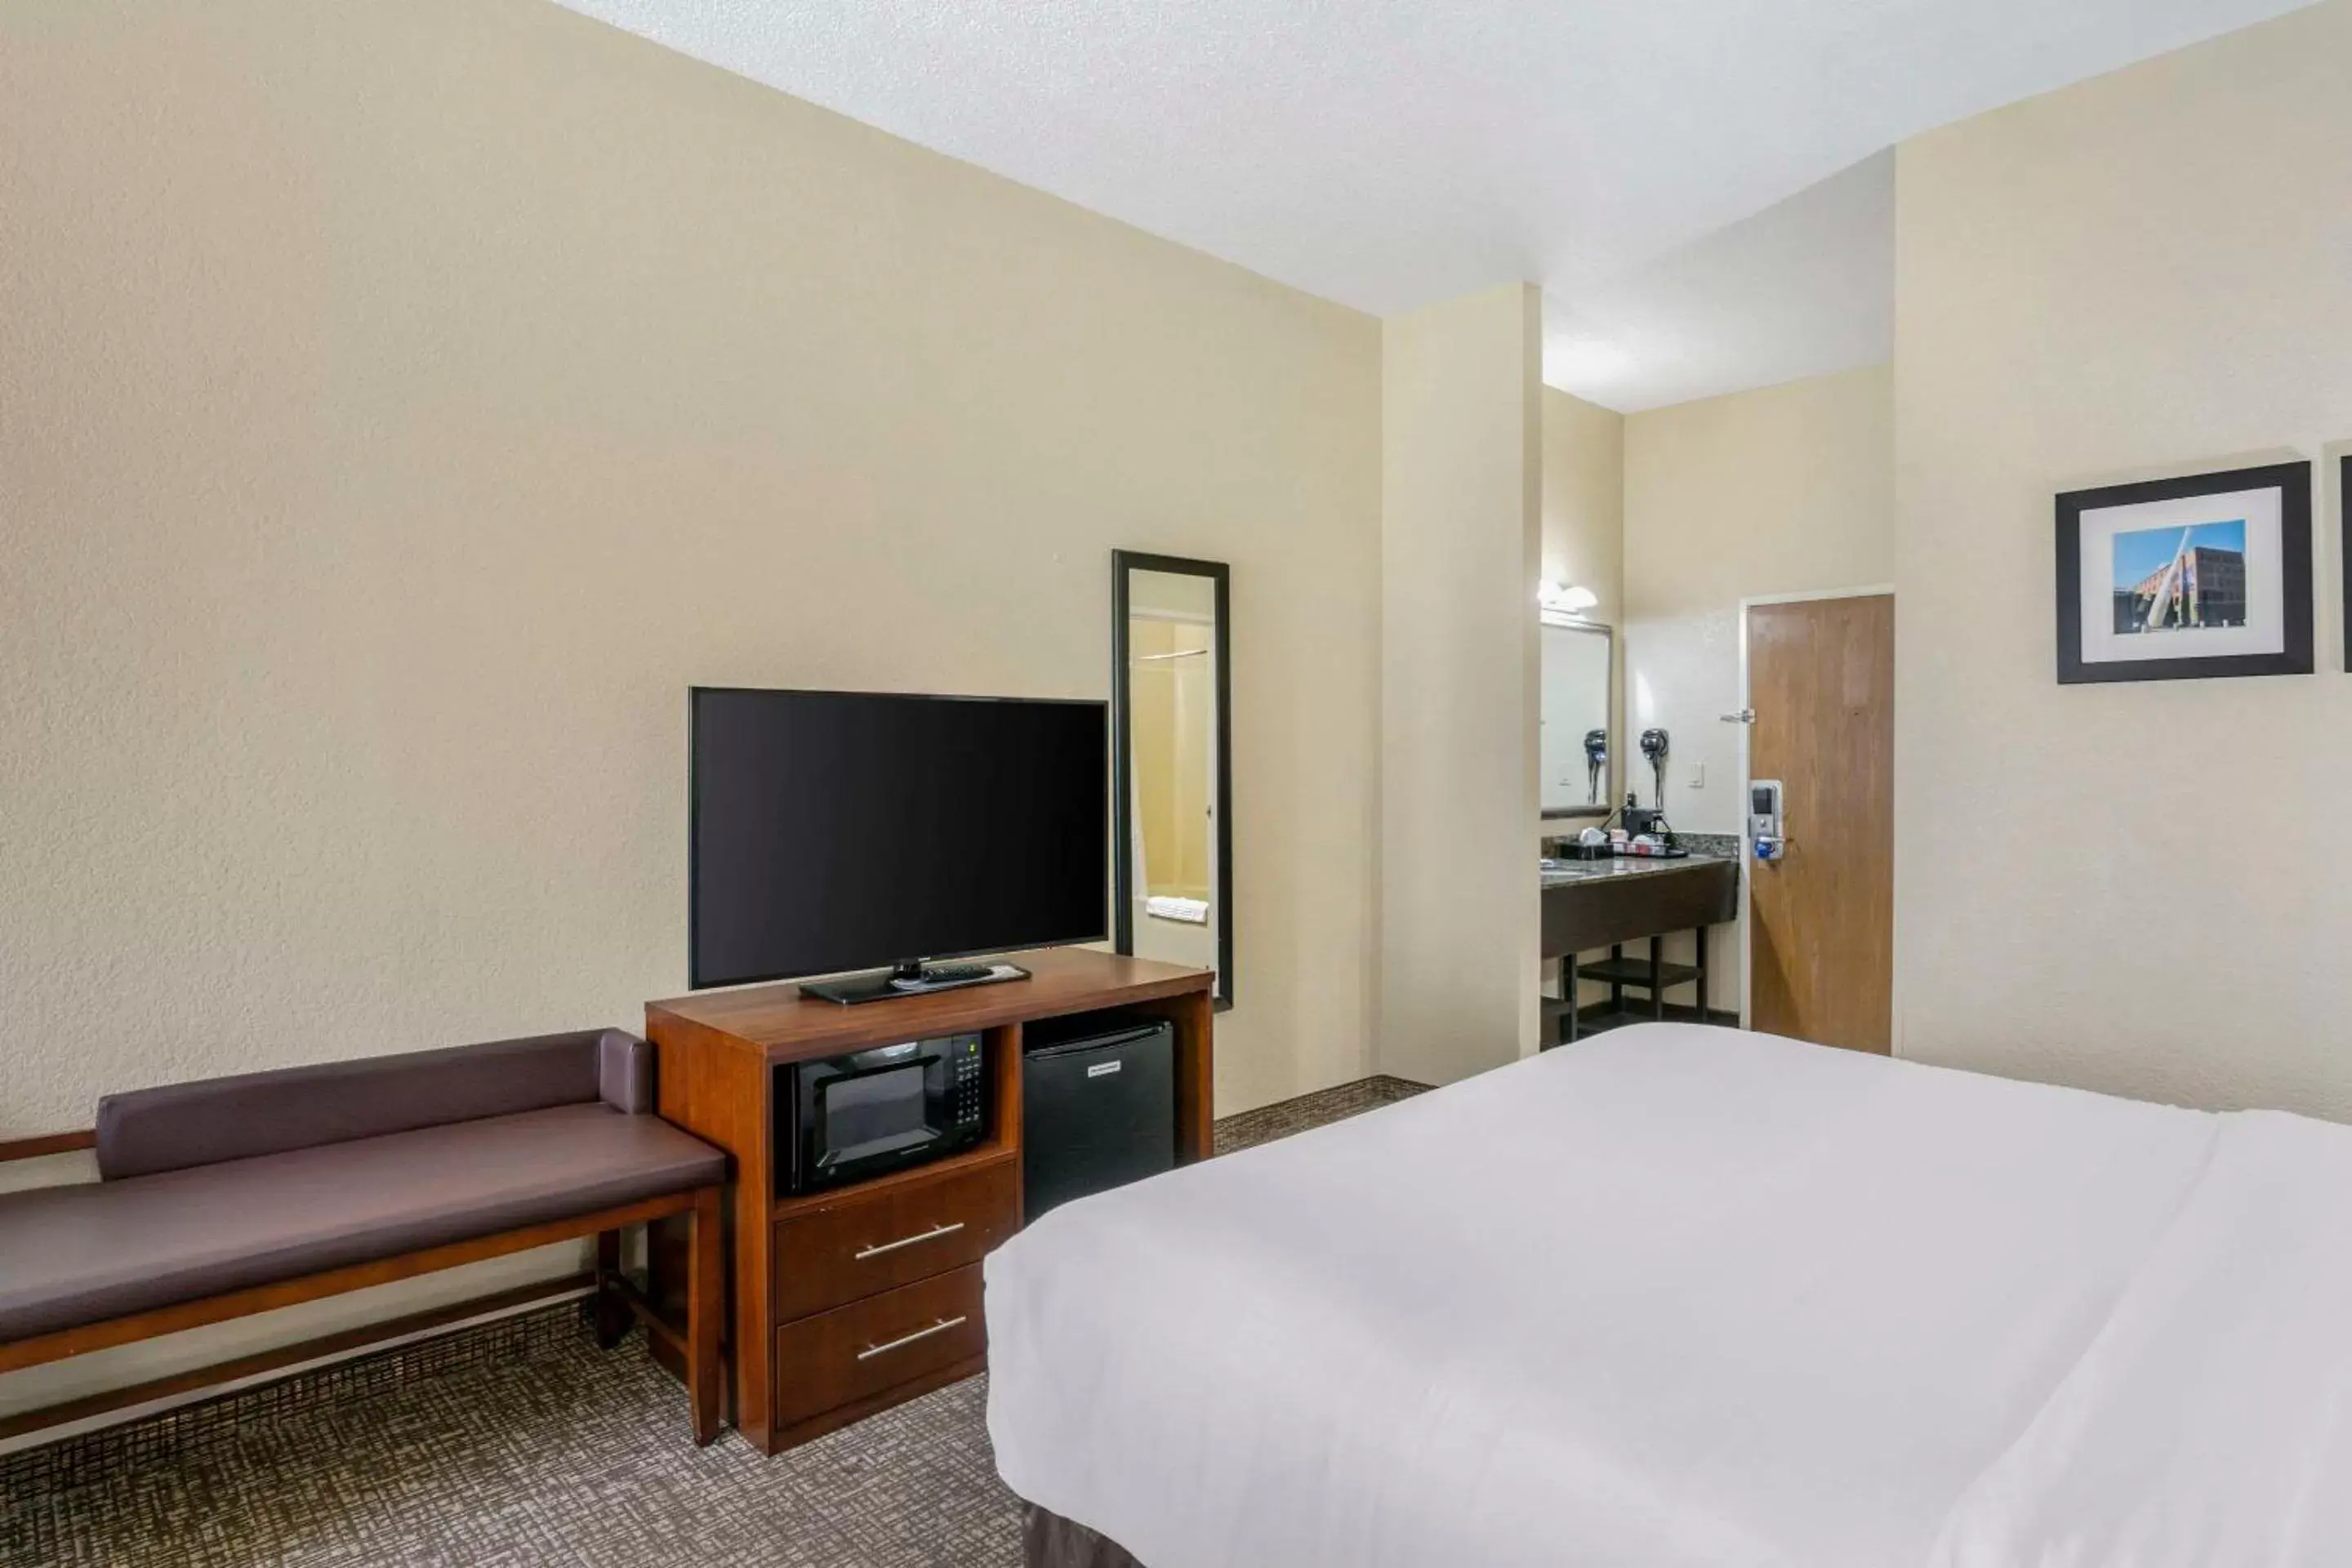 Bedroom, TV/Entertainment Center in Comfort Inn & Suites La Grange